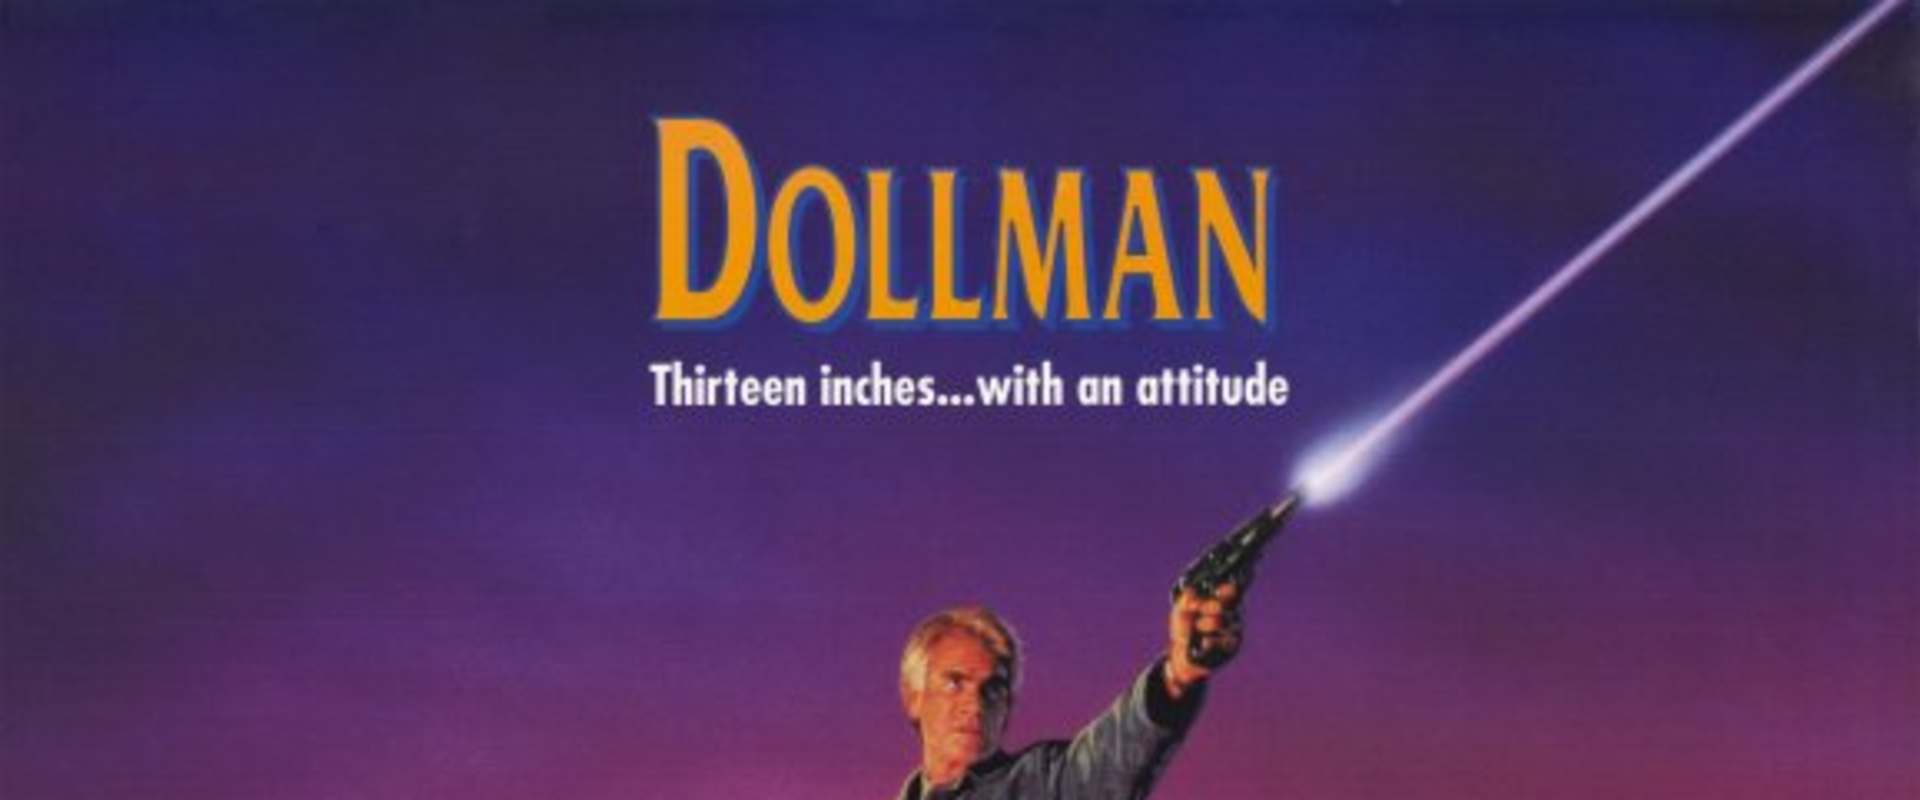 Dollman background 2